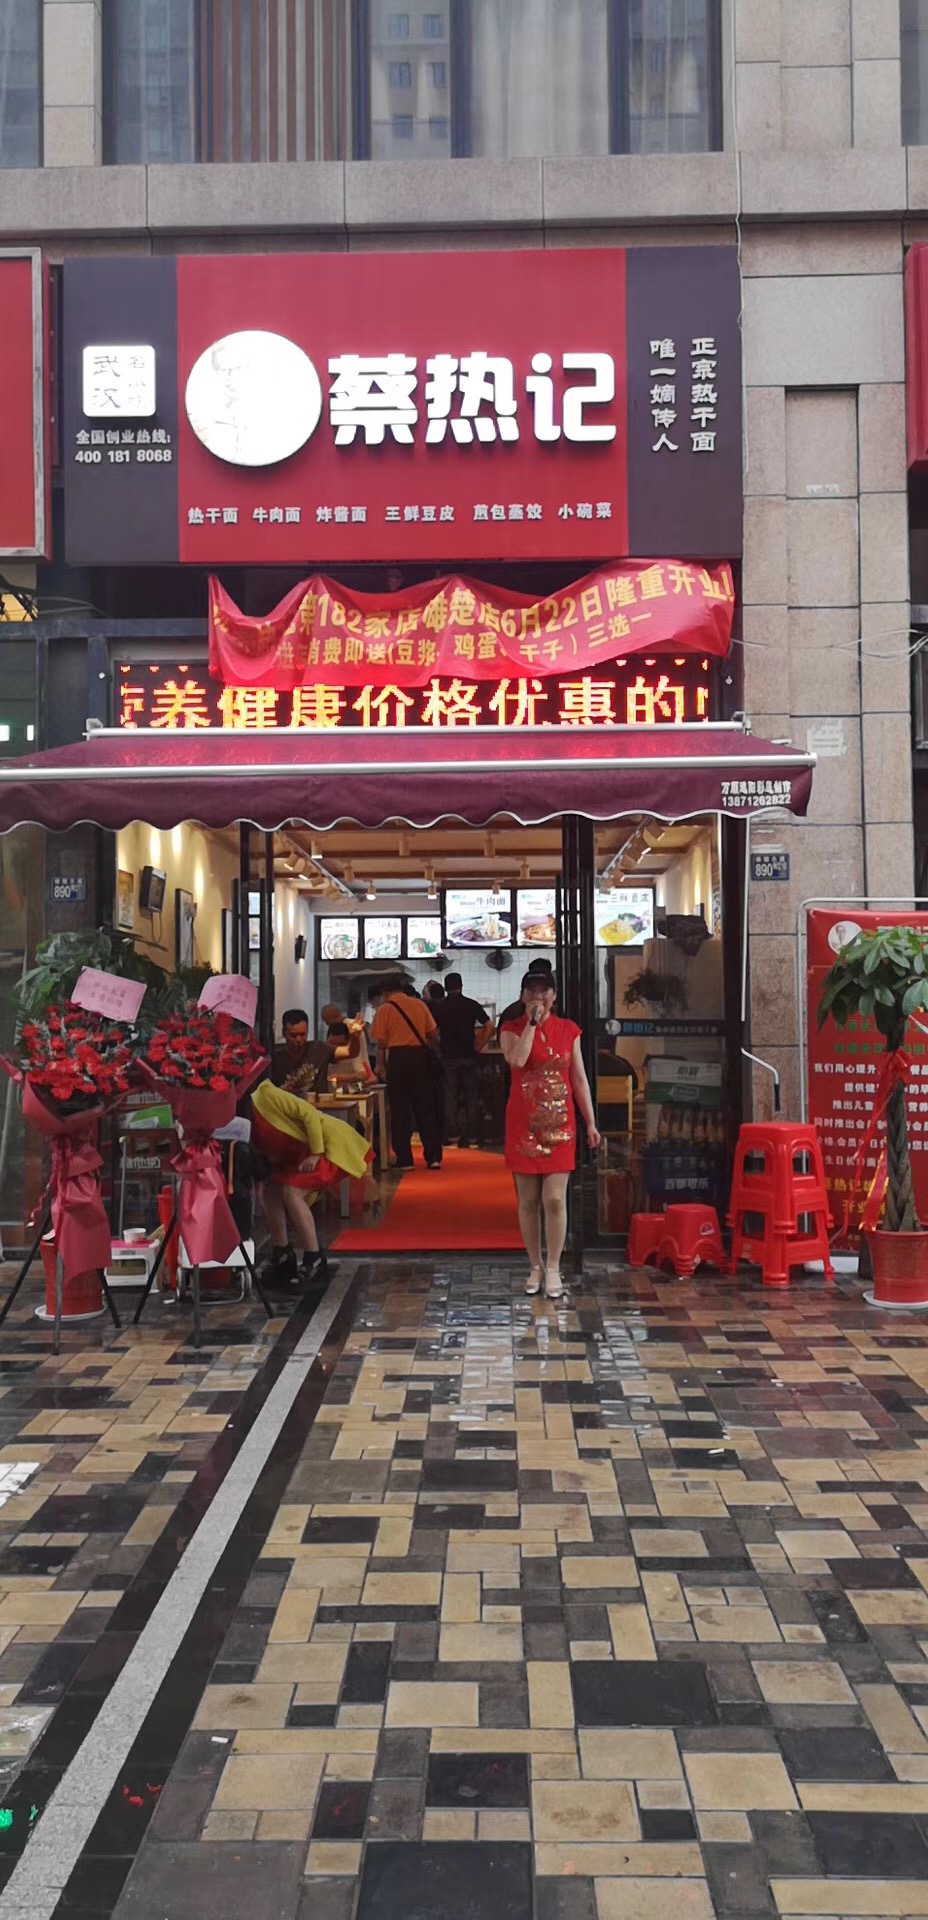 湖北省总工会职工餐饮创业品牌蔡热记雄楚店开业大吉